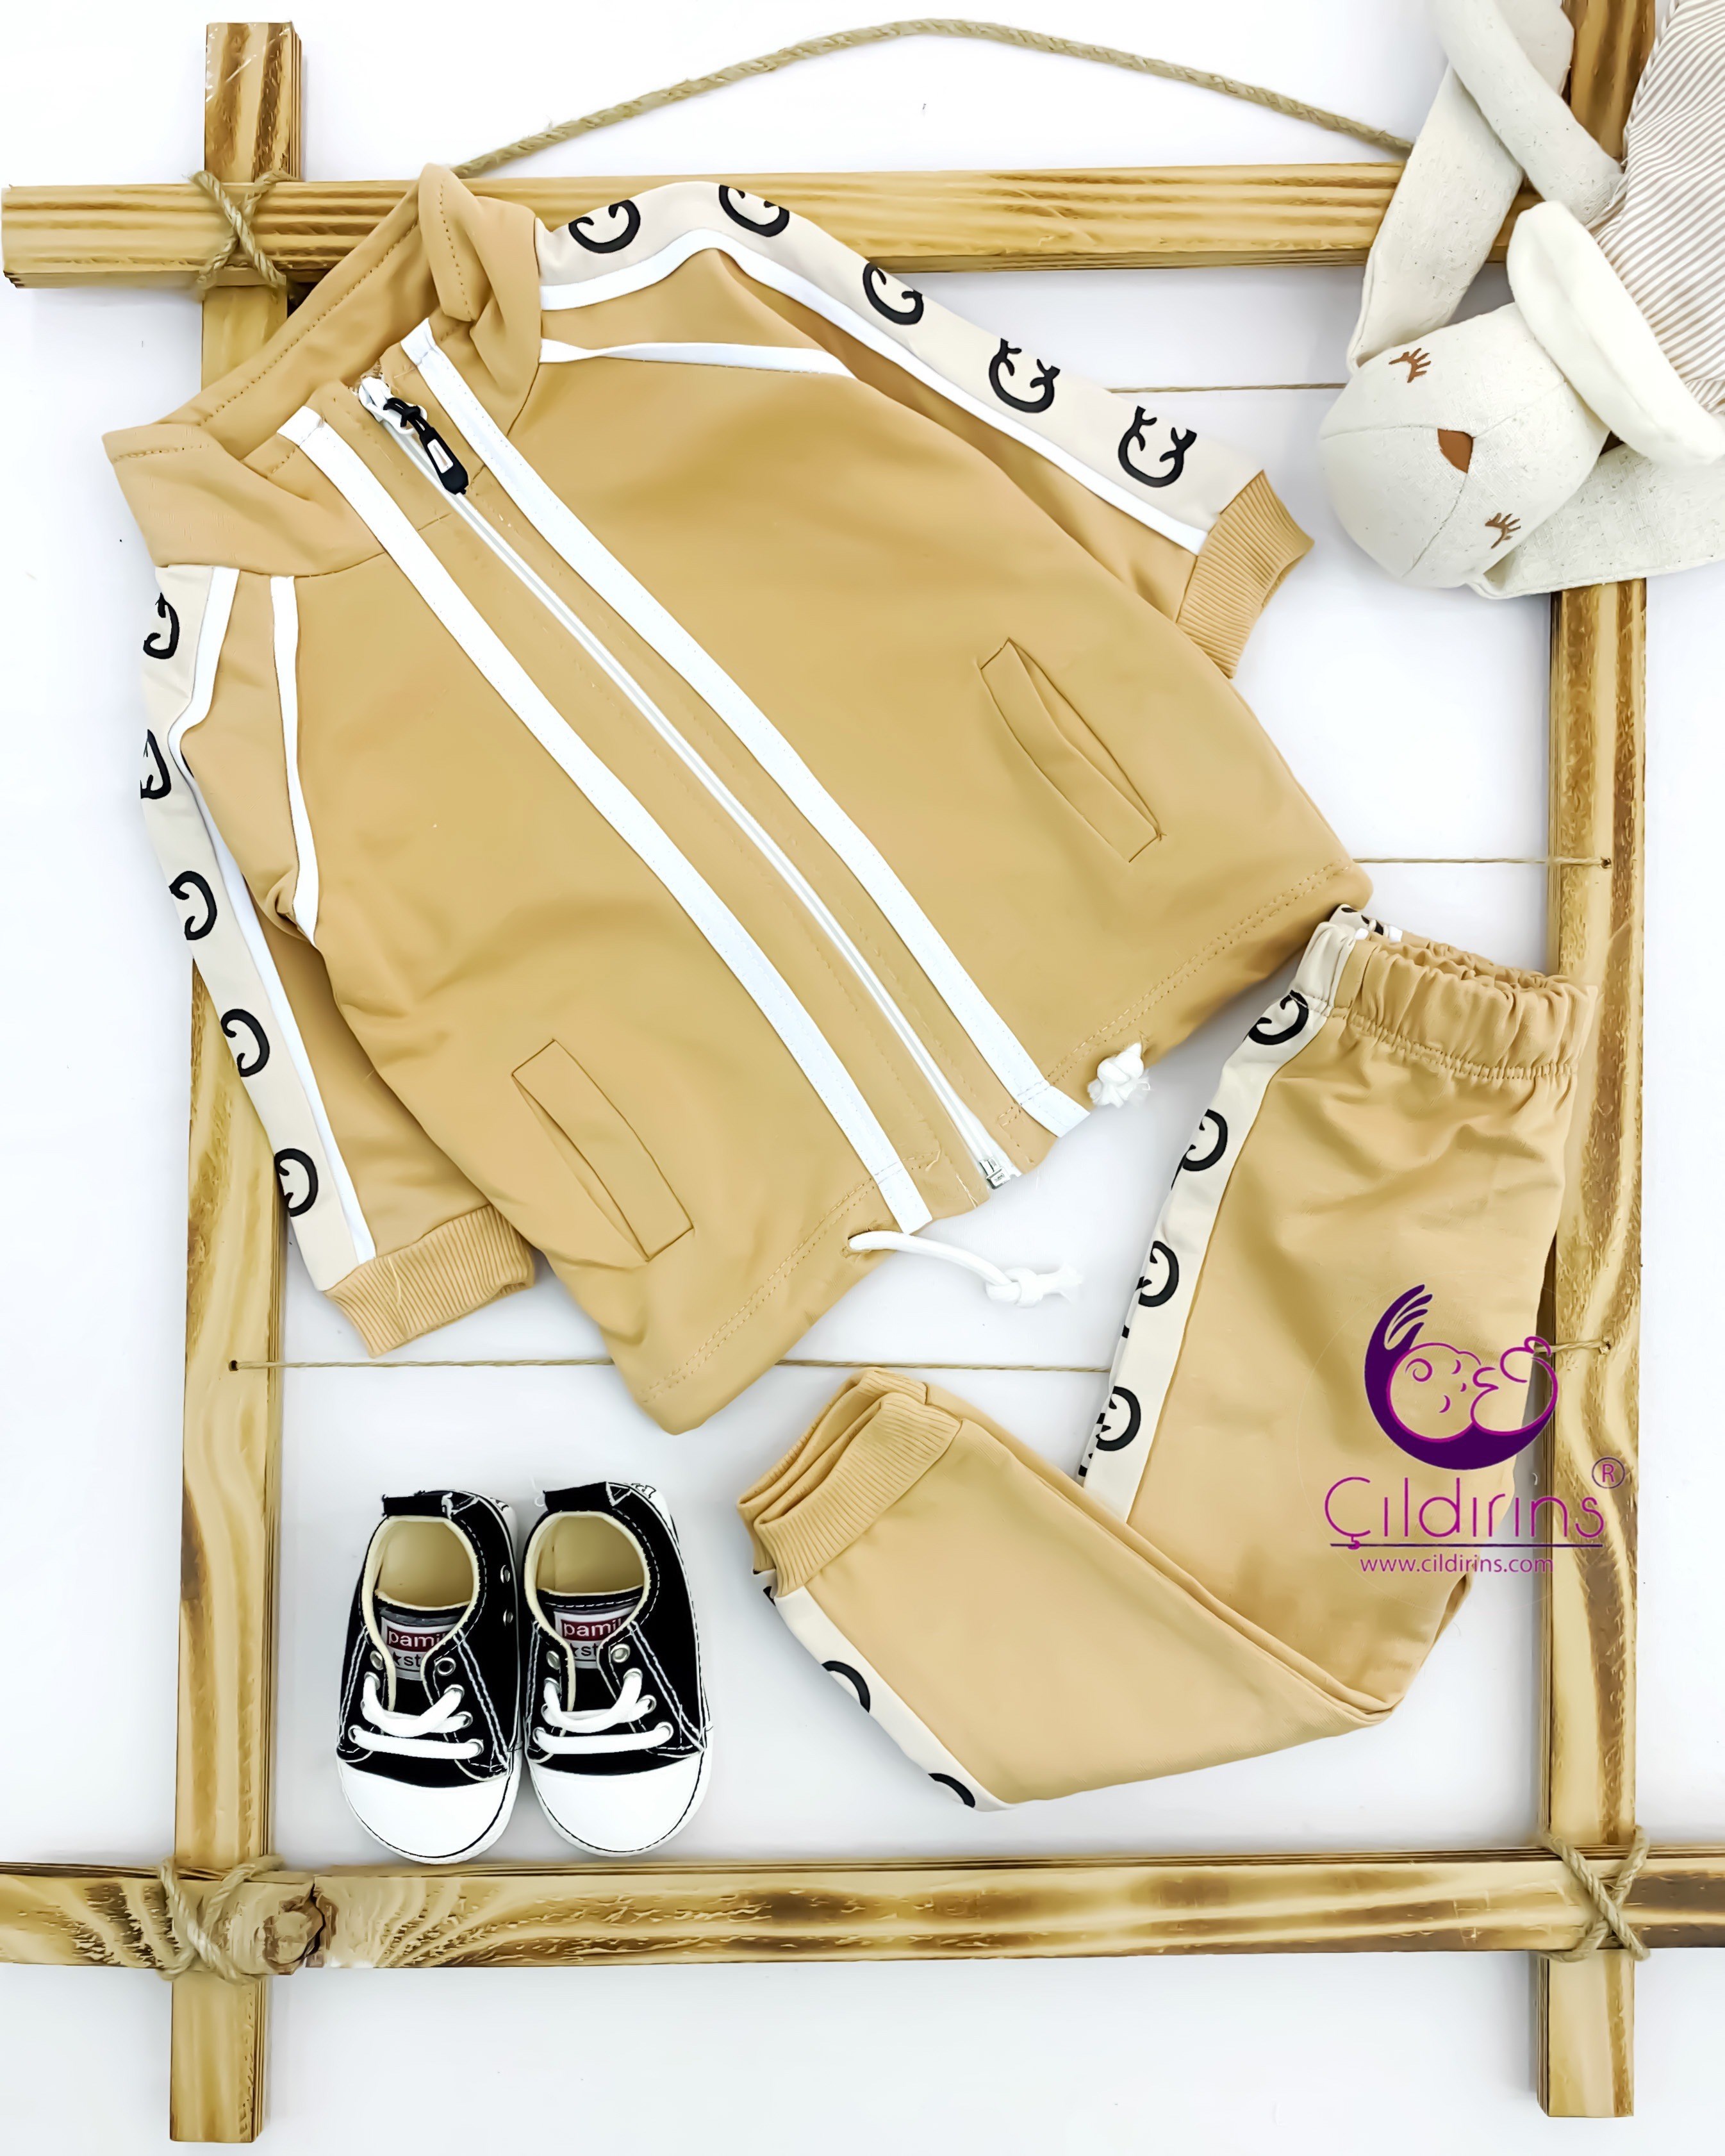 Miniapple Çift Şeritli Kolları ve Pantolonu Gucci Desenli 2’li Çocuk Takımı - HARDAL